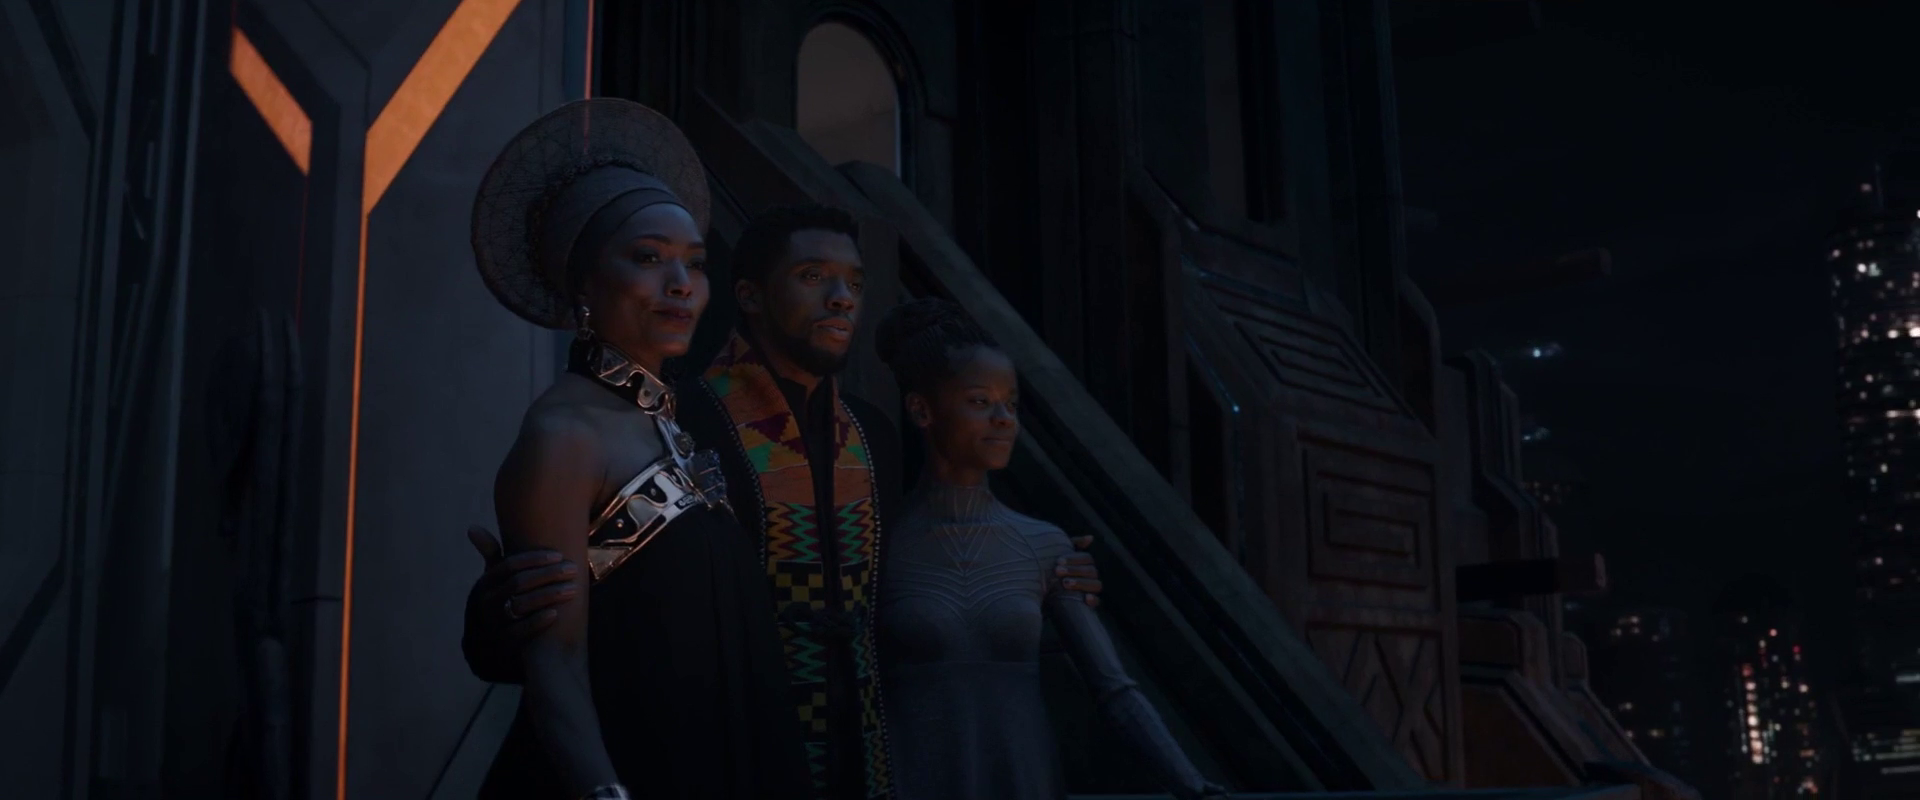 The Royal Family of Wakanda